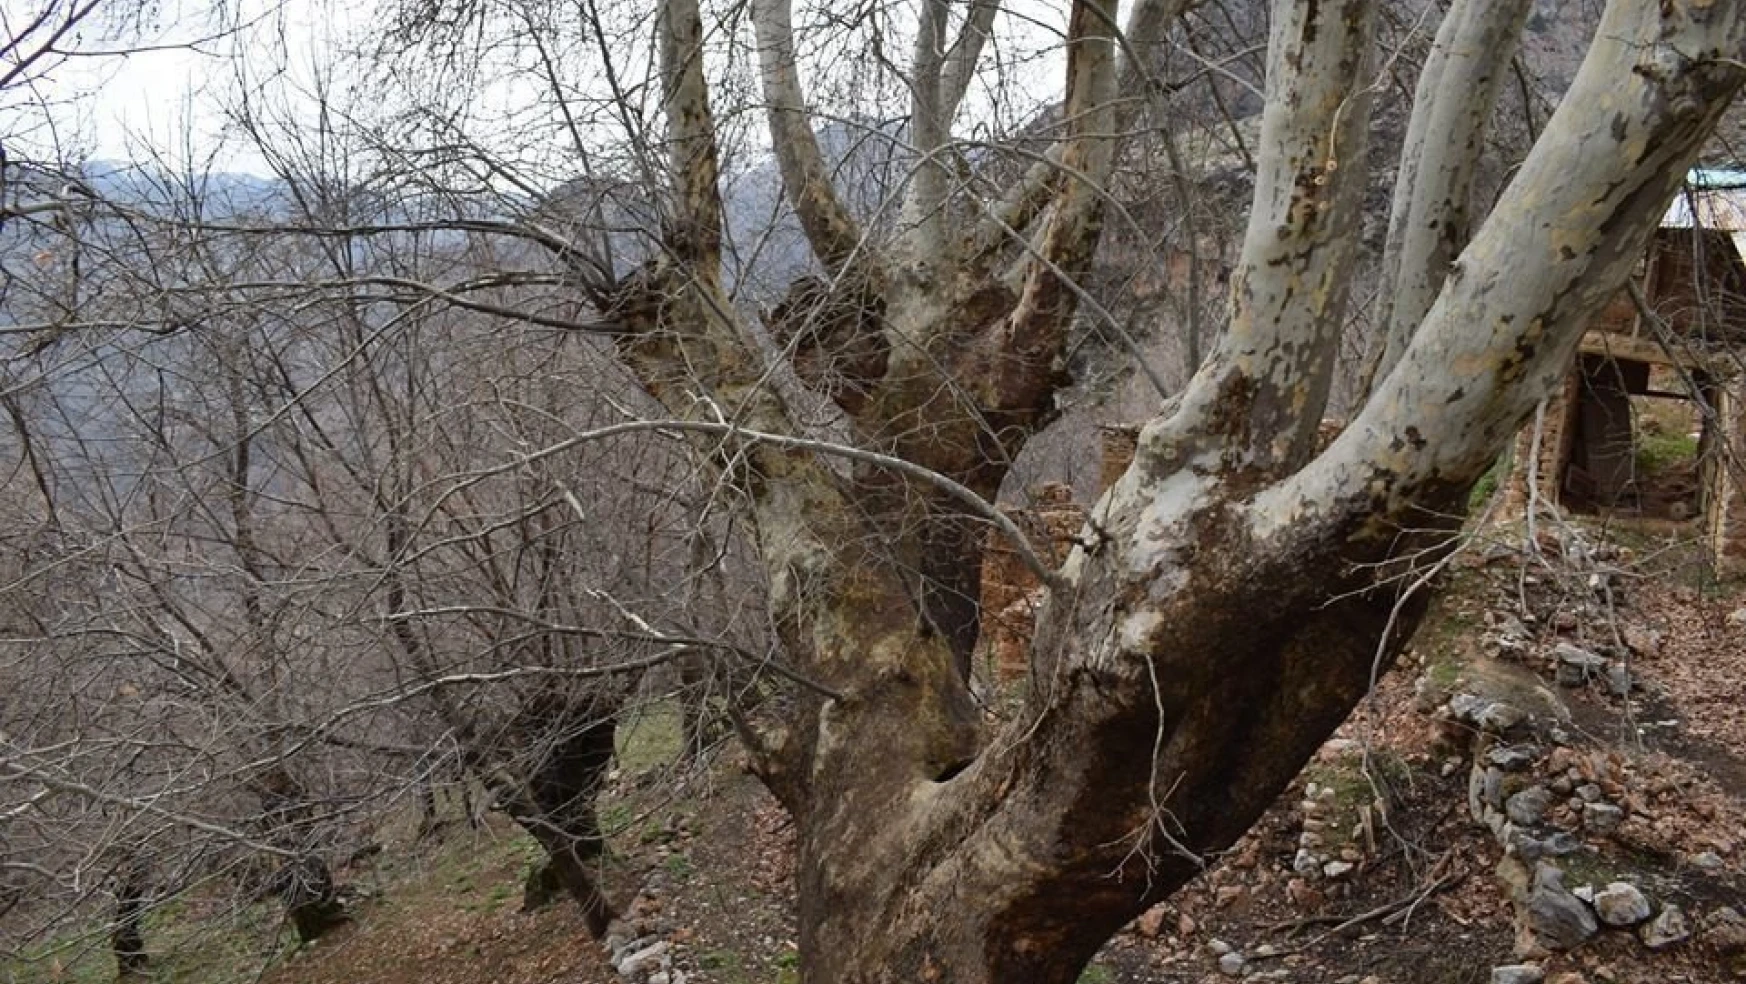 500 yıllık çınar ağacı yıllara meydan okuyor
